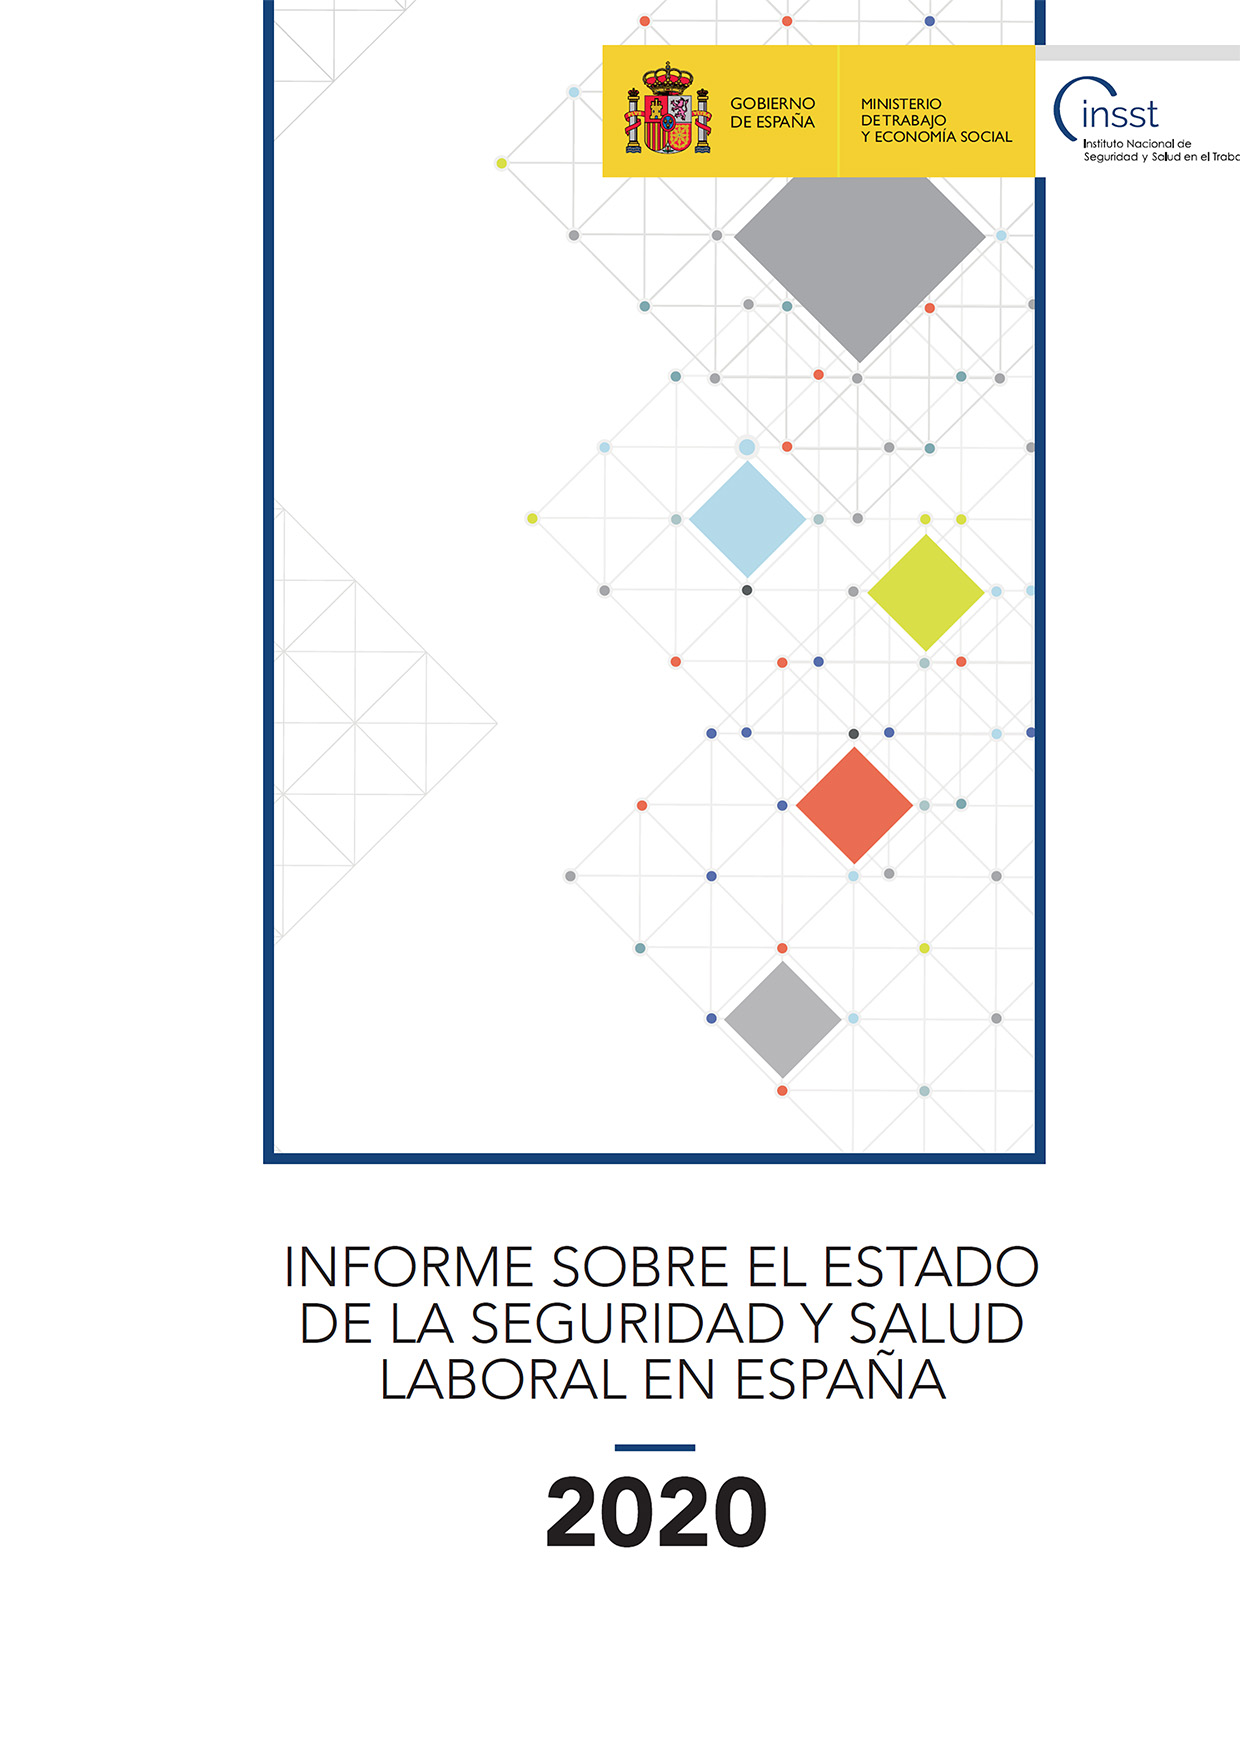 Informe sobre el estado de la seguridad y salud laboral en España